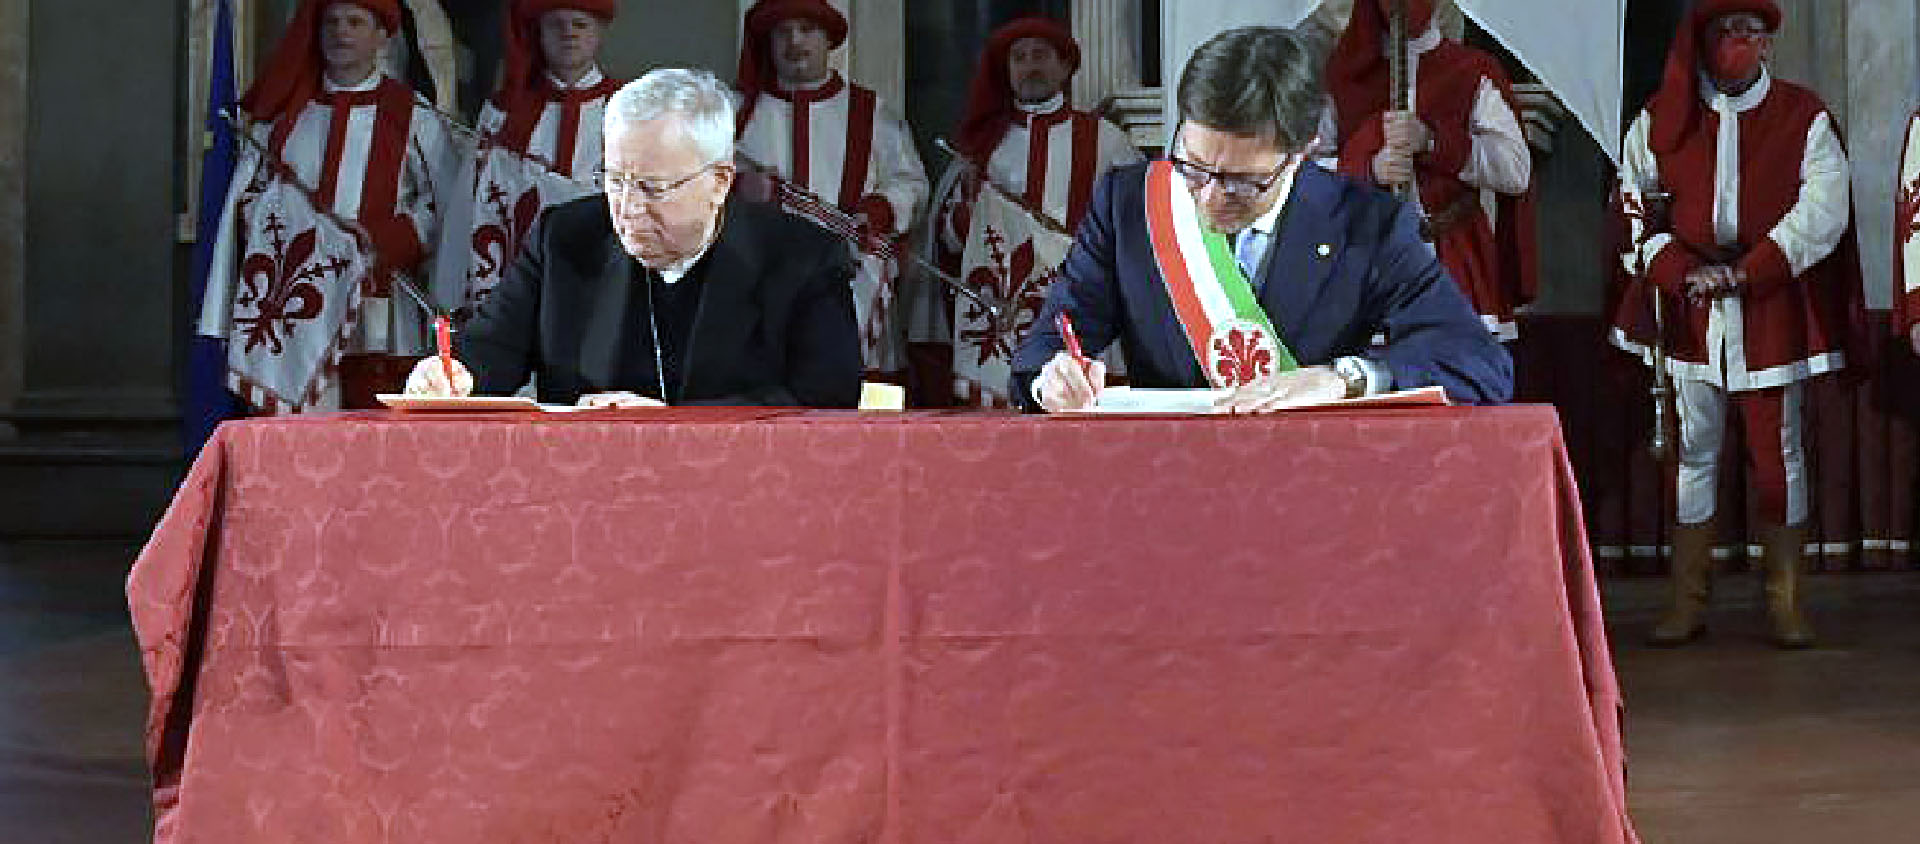 Le cardinal Bassetti, président de la Conférence épiscopale italienne, et le Maire de Florence, Dario Nardella, signent la "Charte de Florence" | © Conf. épiscopale italienne